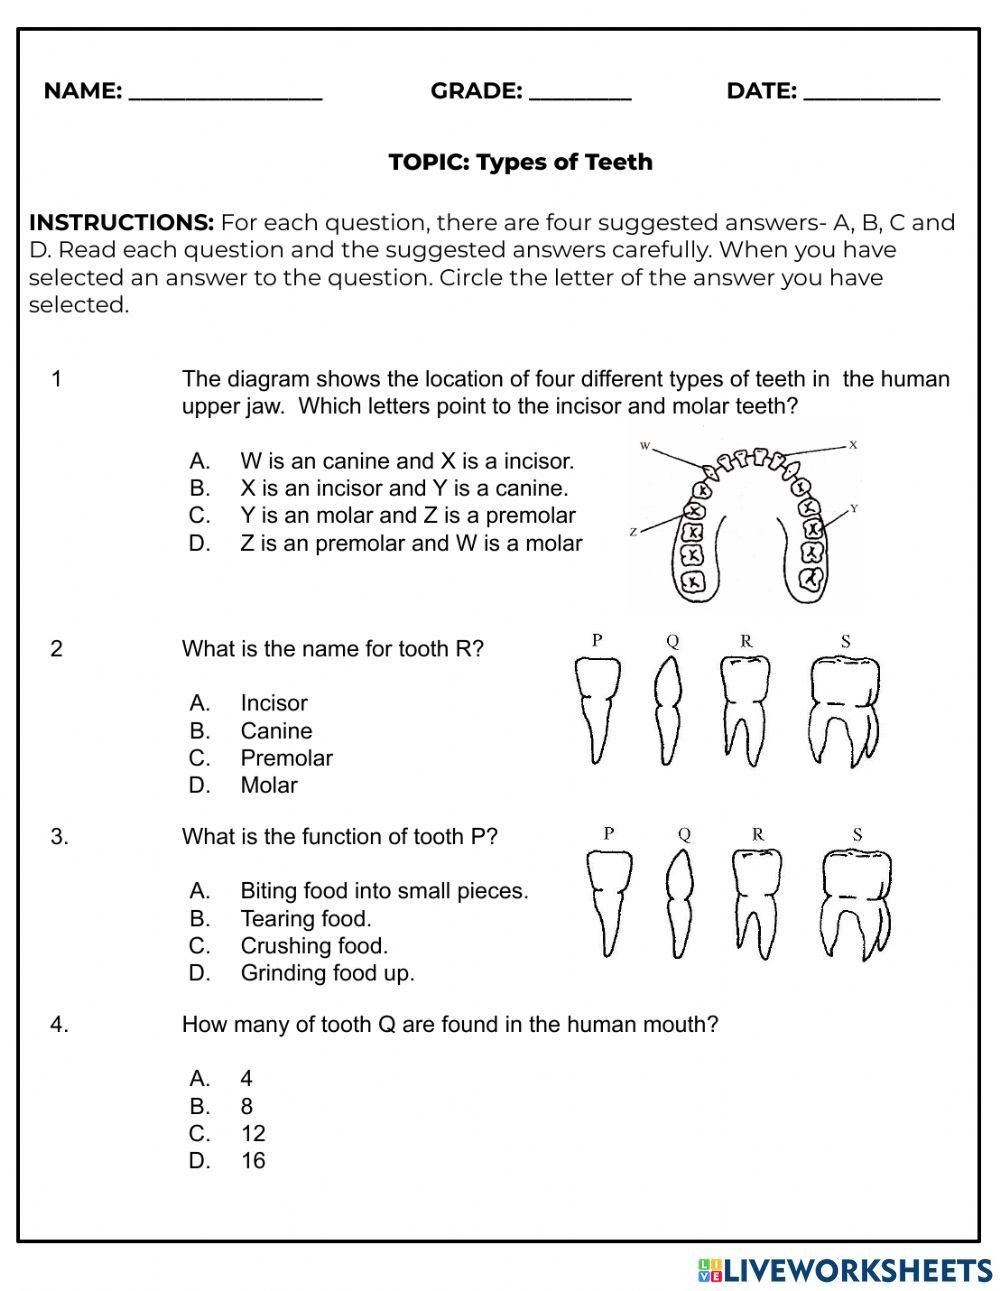 Types of Teeth